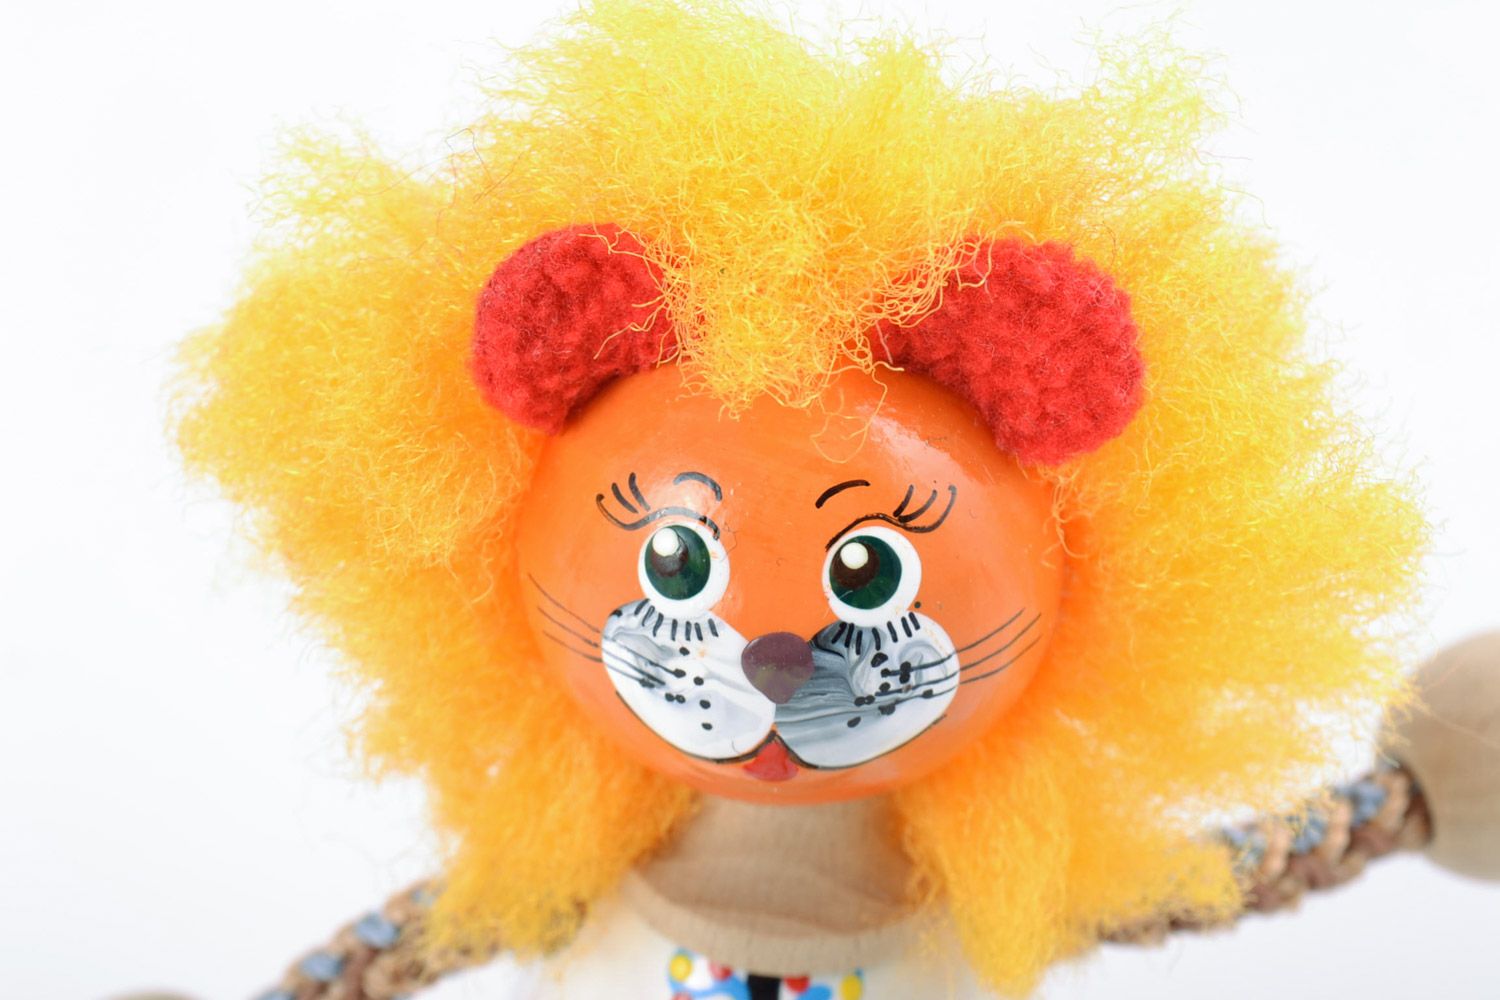 Jouet en bois original fait main peint figurine décorative pour enfant Lion photo 3